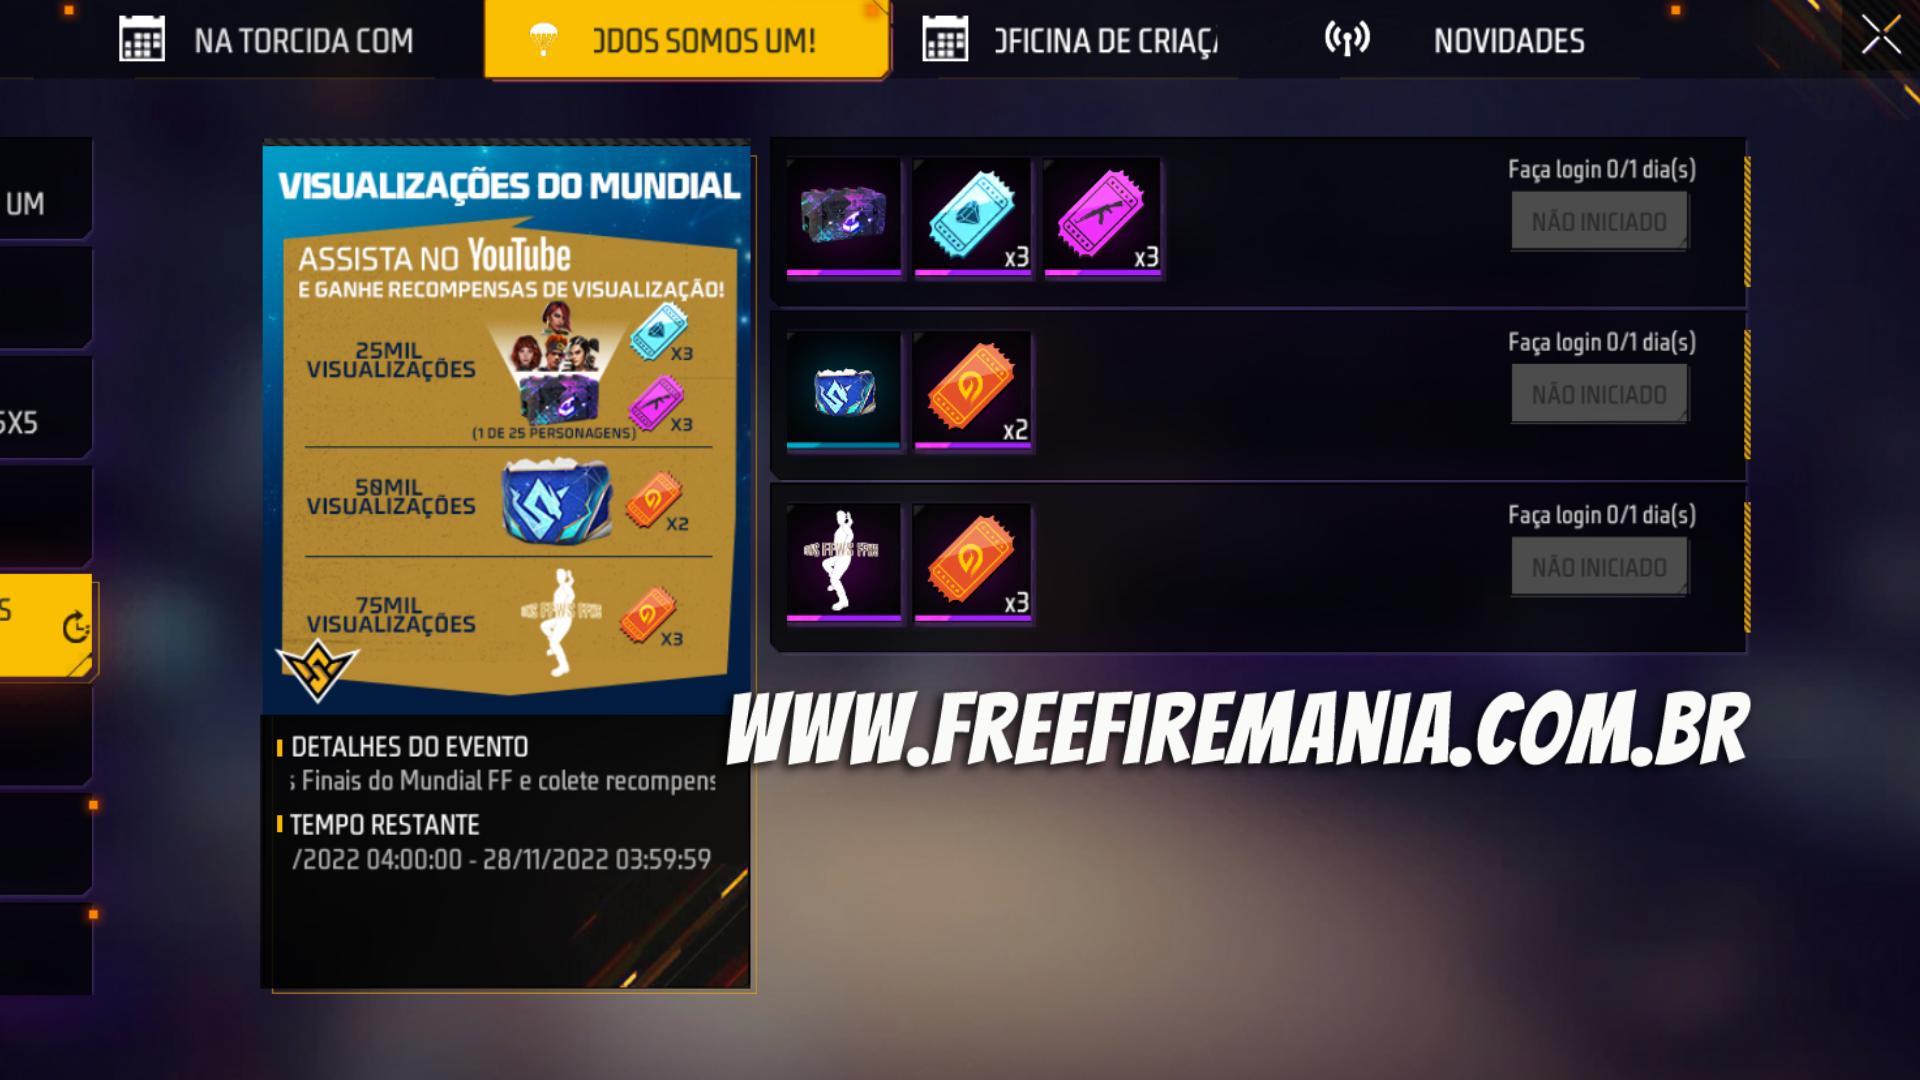 Final do Mundial de Free Fire - Recompensas para jogadores